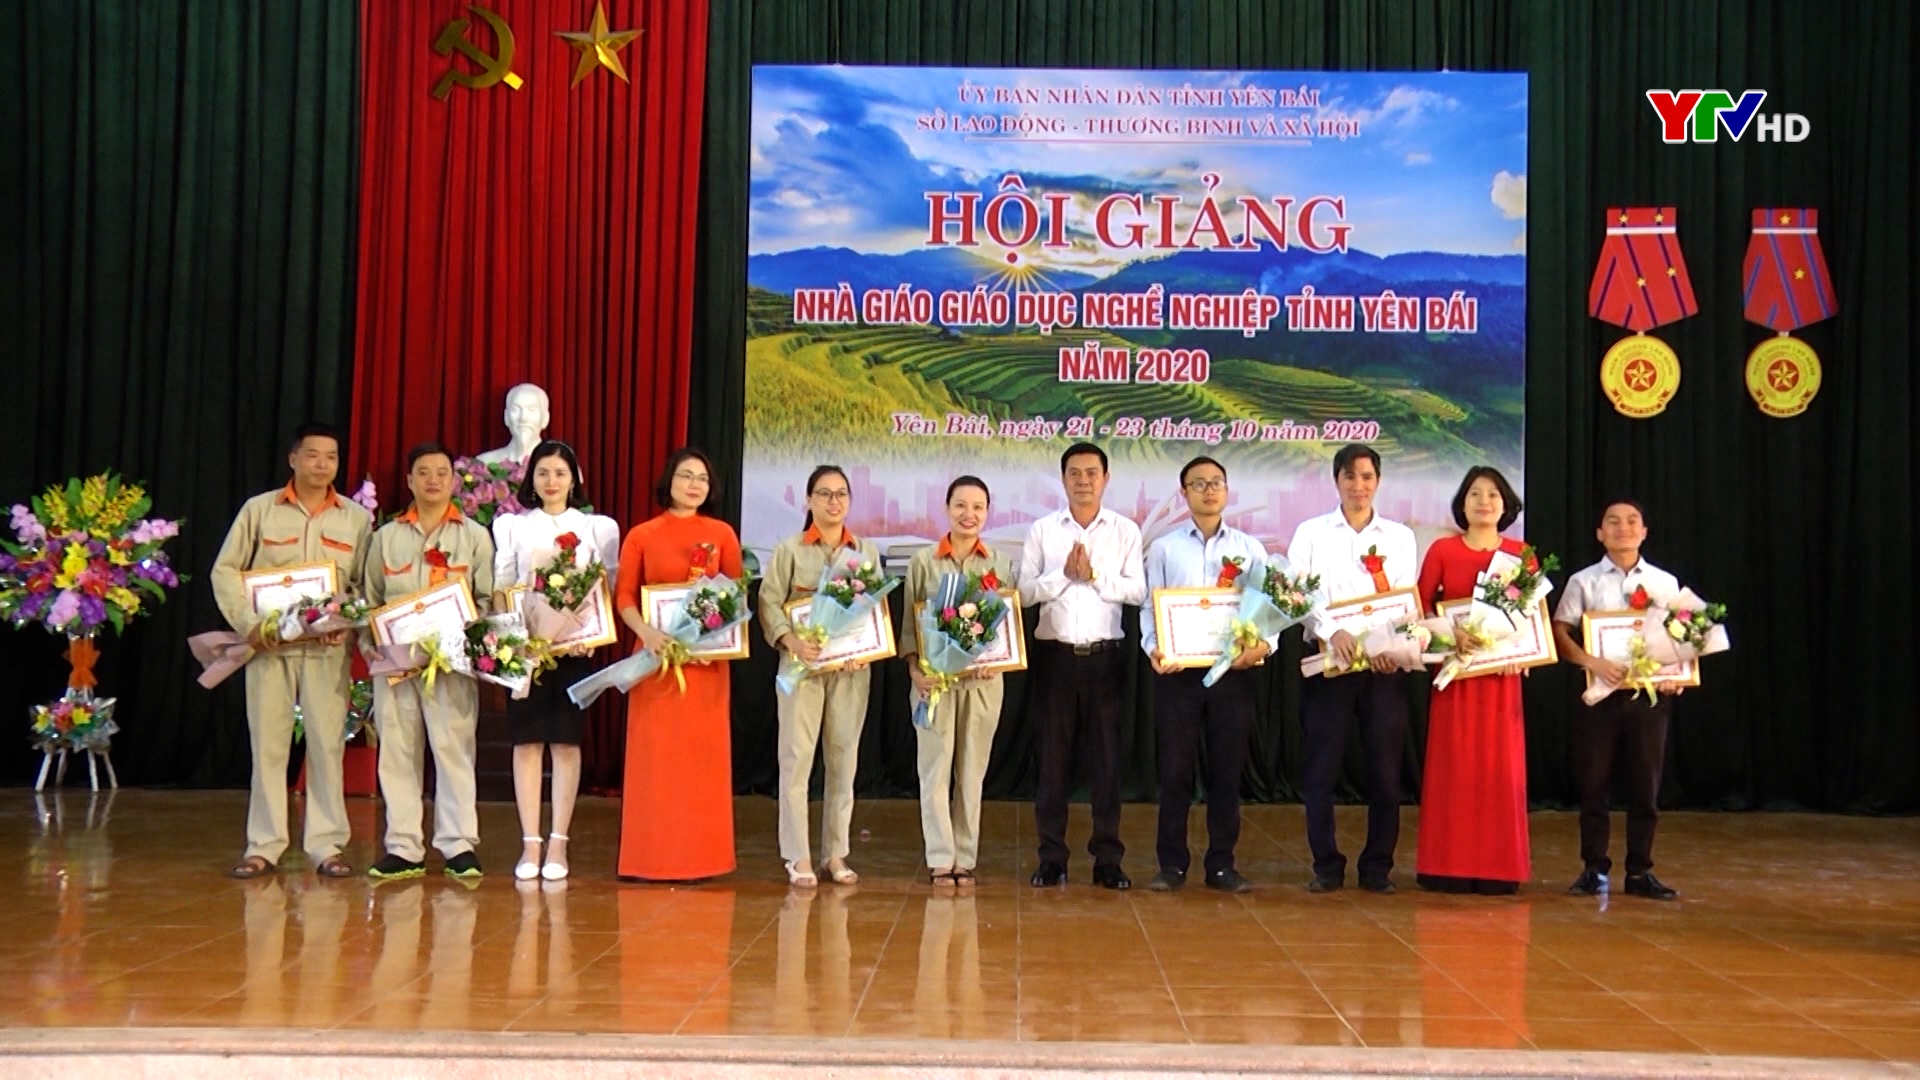 Bế mạc Hội giảng nhà giáo giáo dục nghề nghiệp tỉnh Yên Bái năm 2020